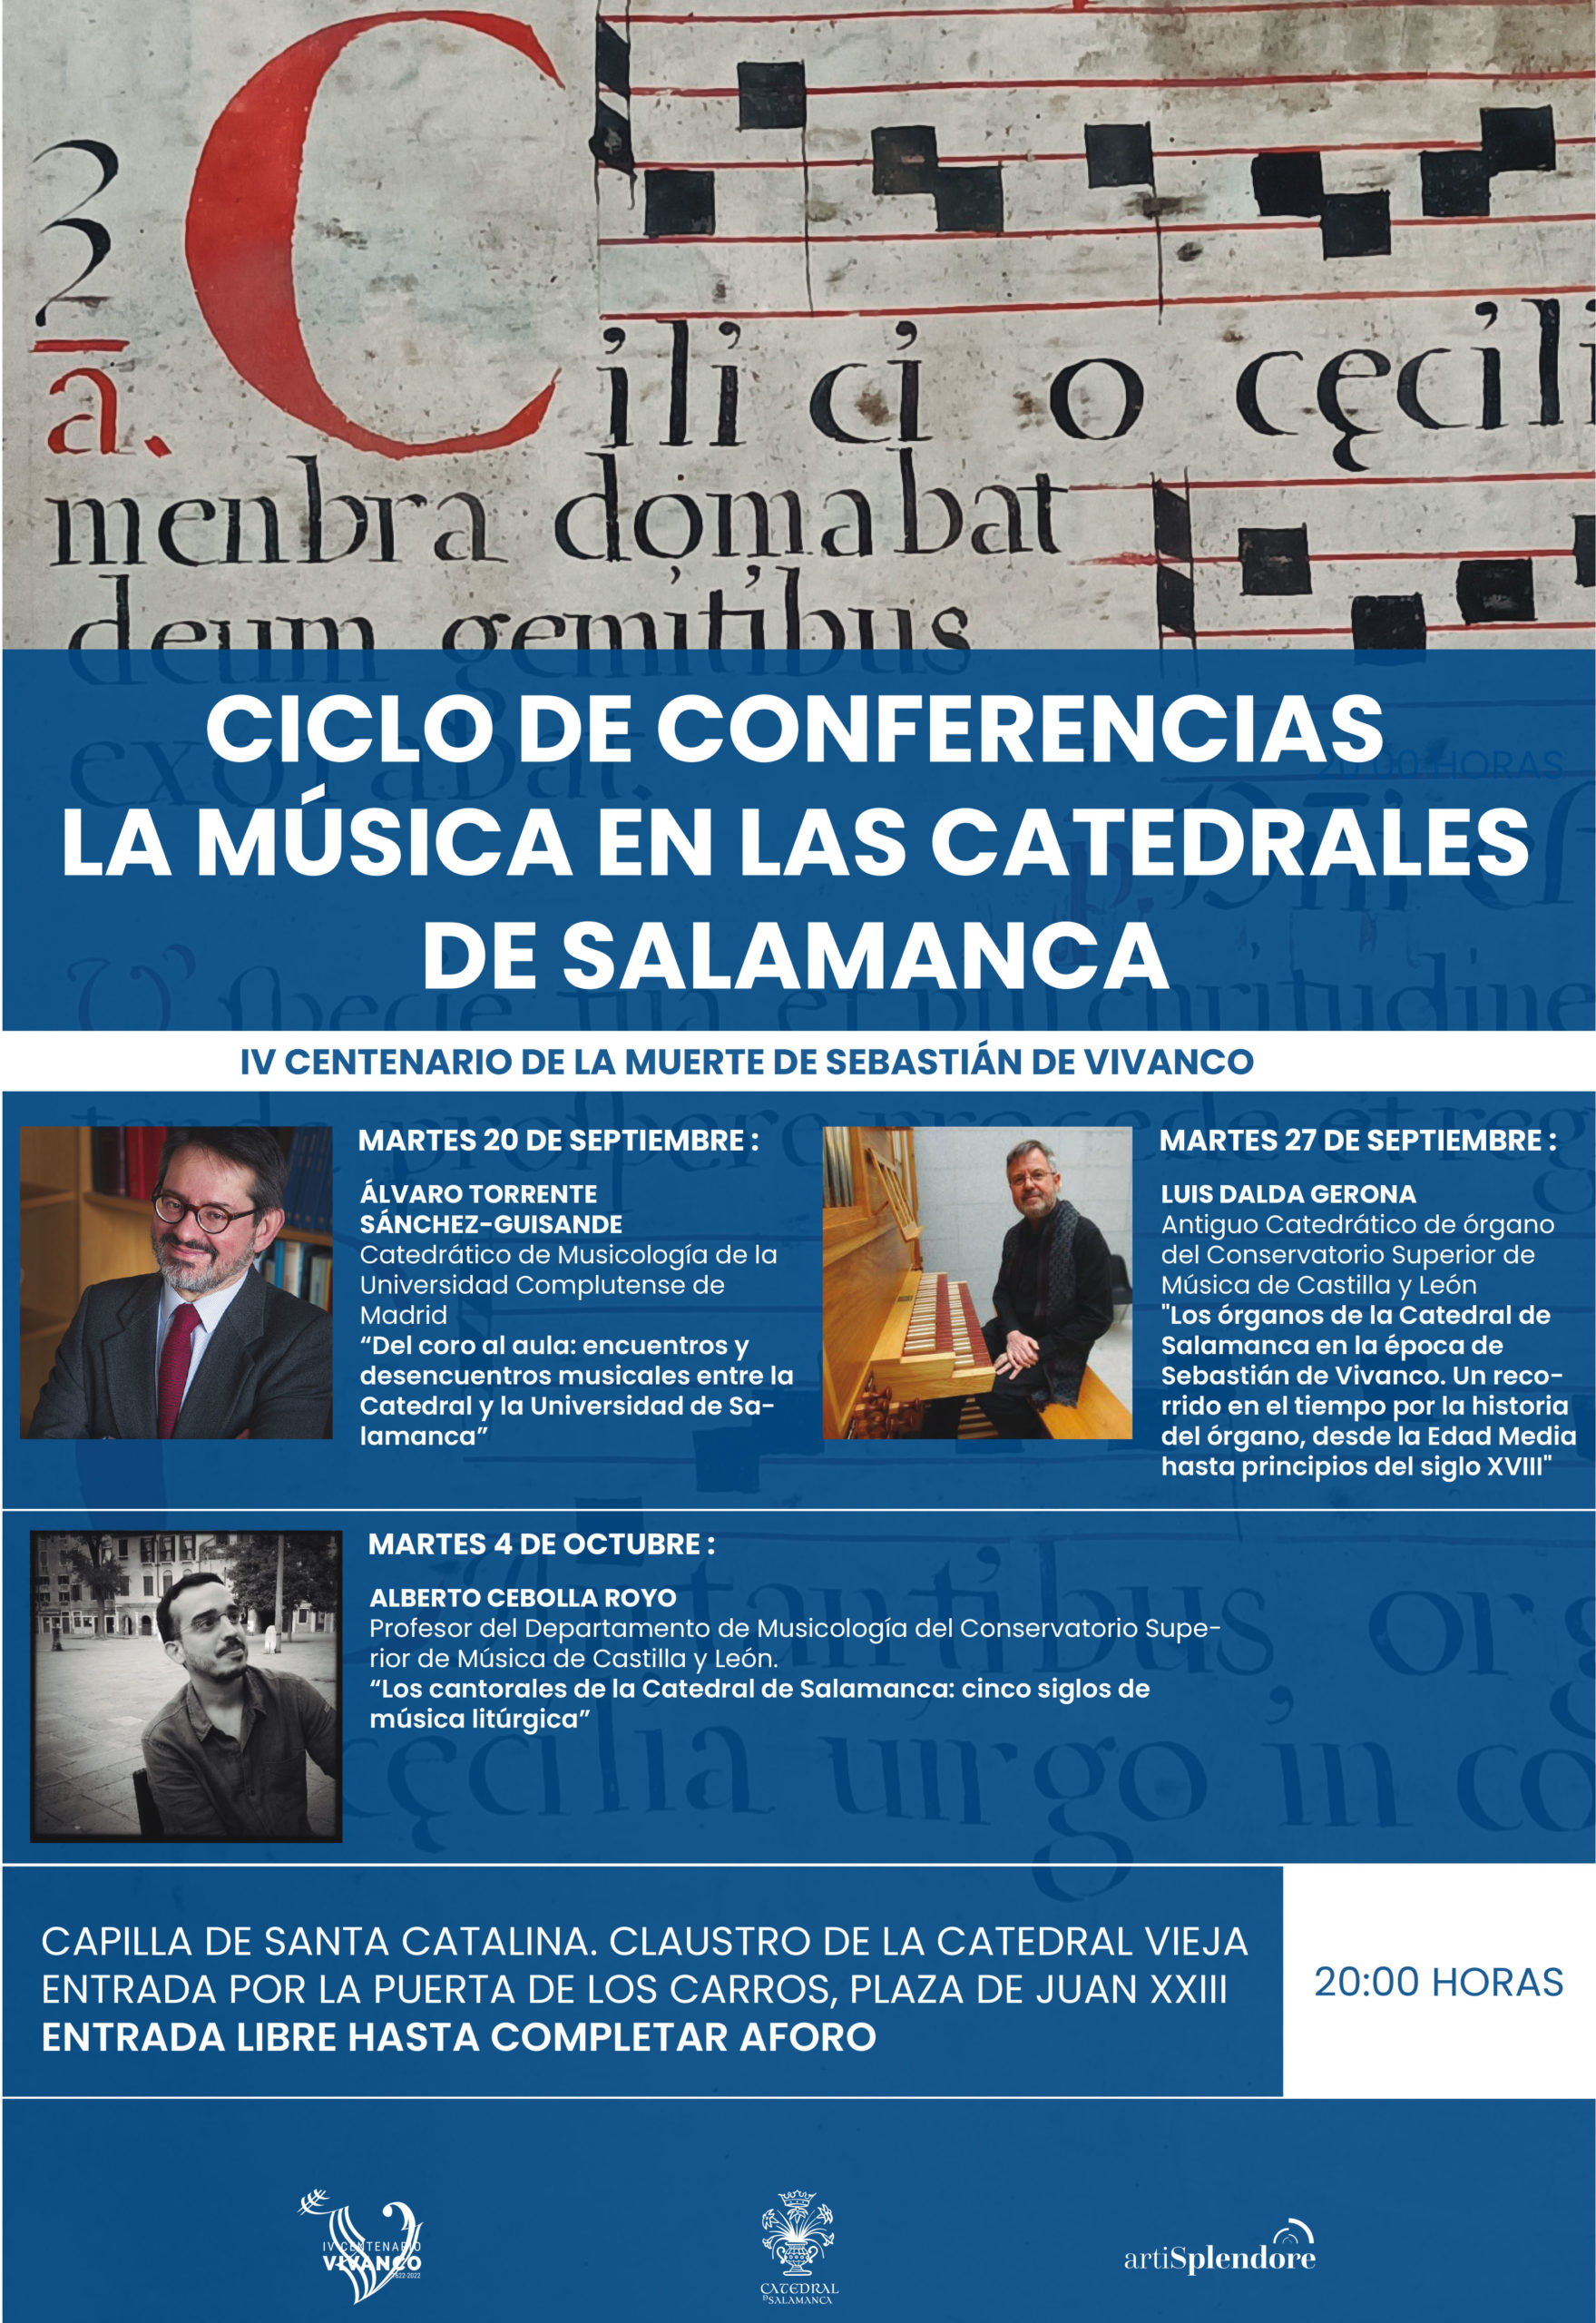 Conferencia: “Los cantorales de la Catedral de Salamanca”